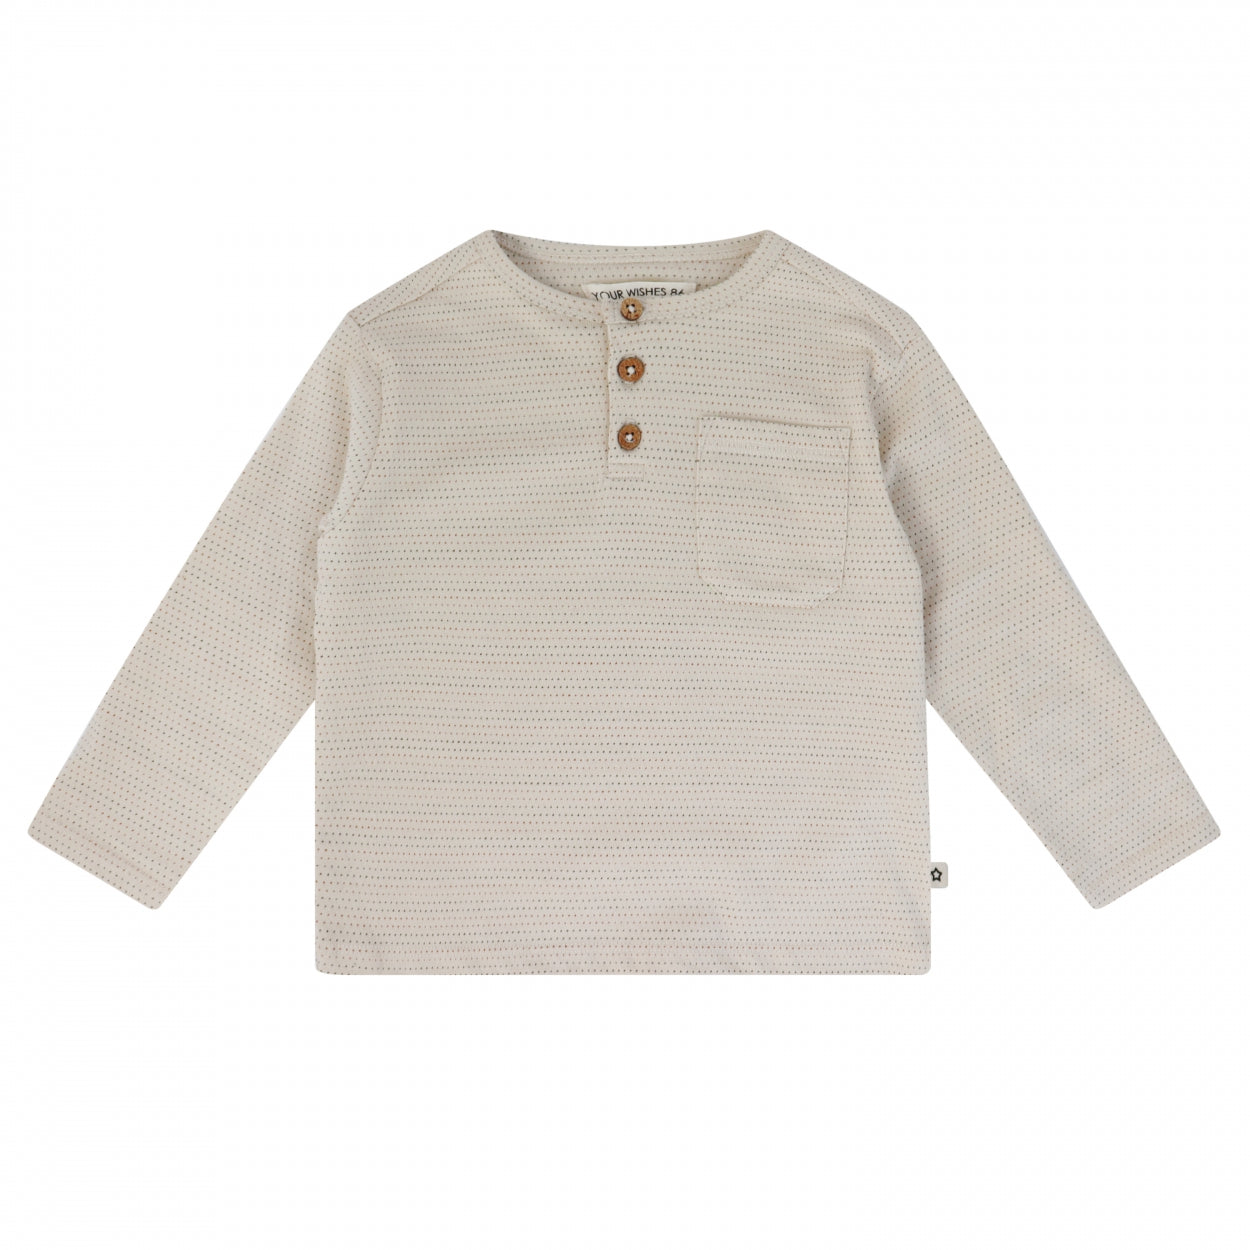 Meisjes Shirt lange mouw Tip Toe | Gemre van Your Wishes in de kleur Honeycomb in maat 134-140.